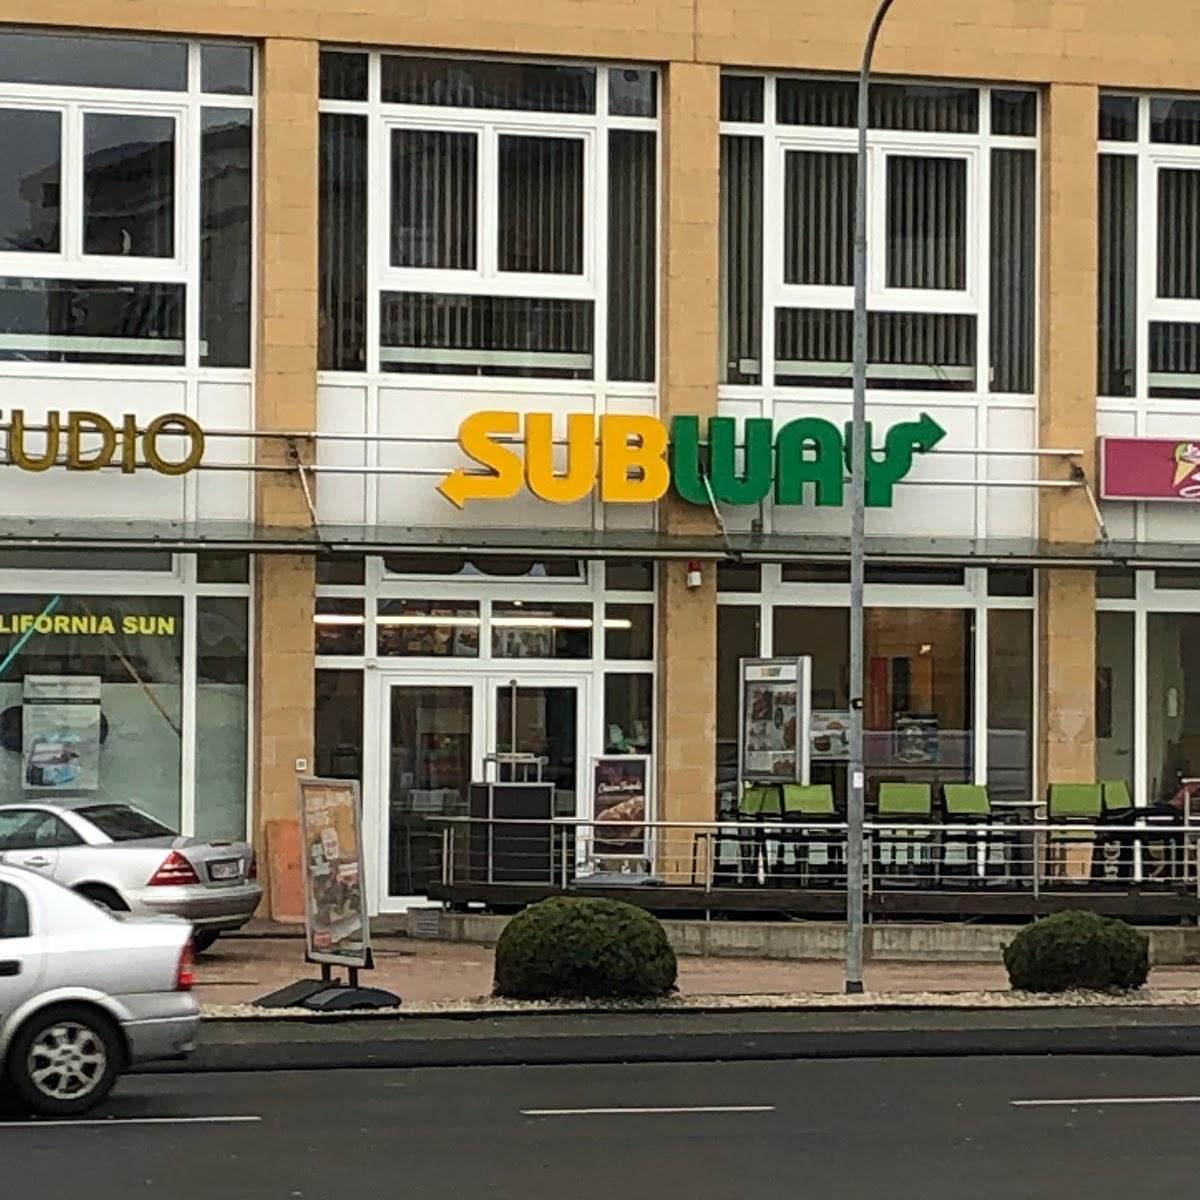 Restaurant "Subway" in Kerpen